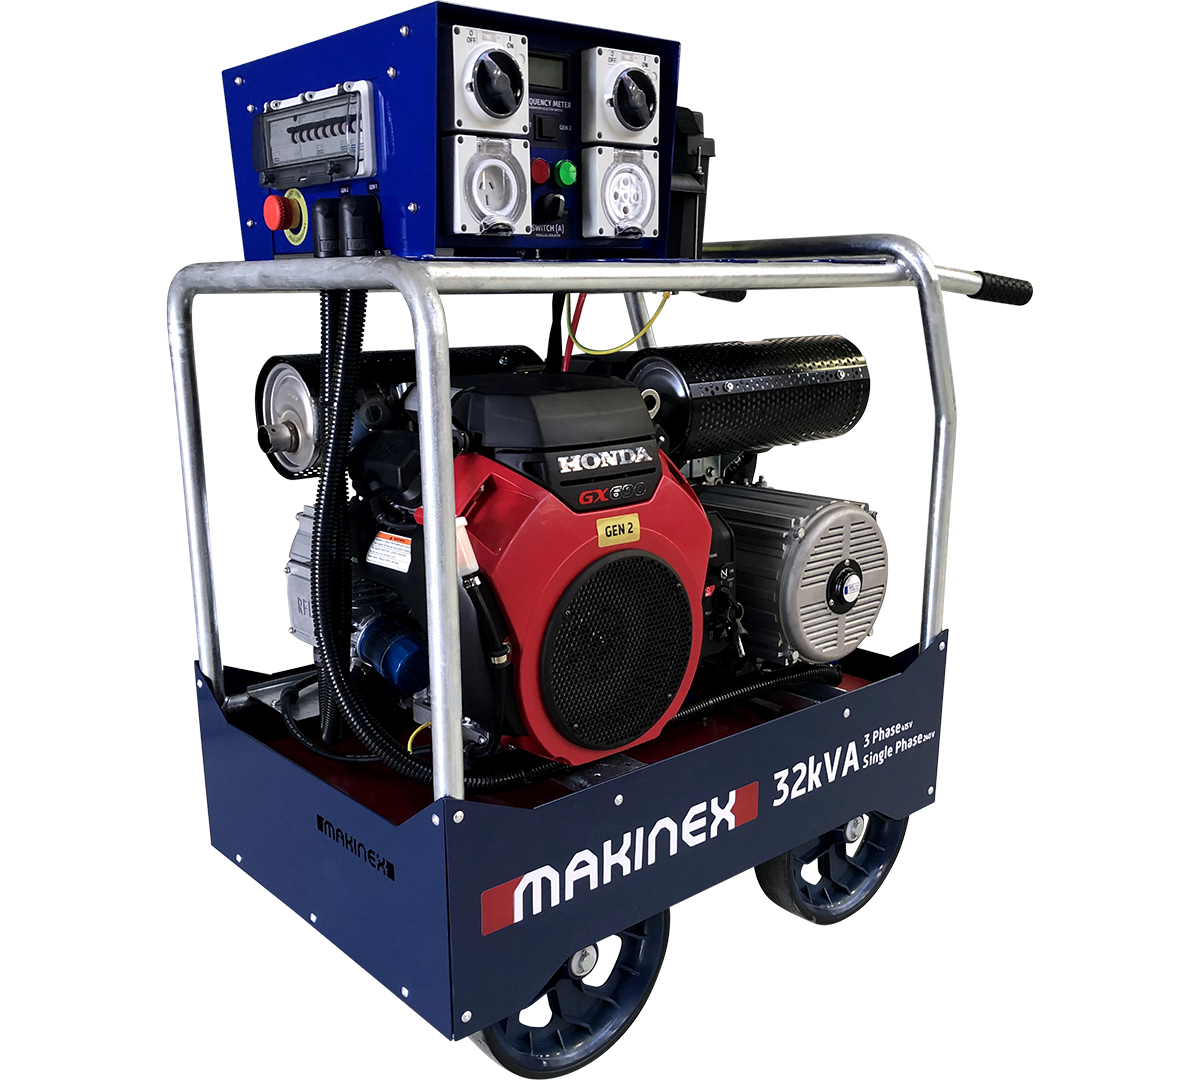 Makinex power generator